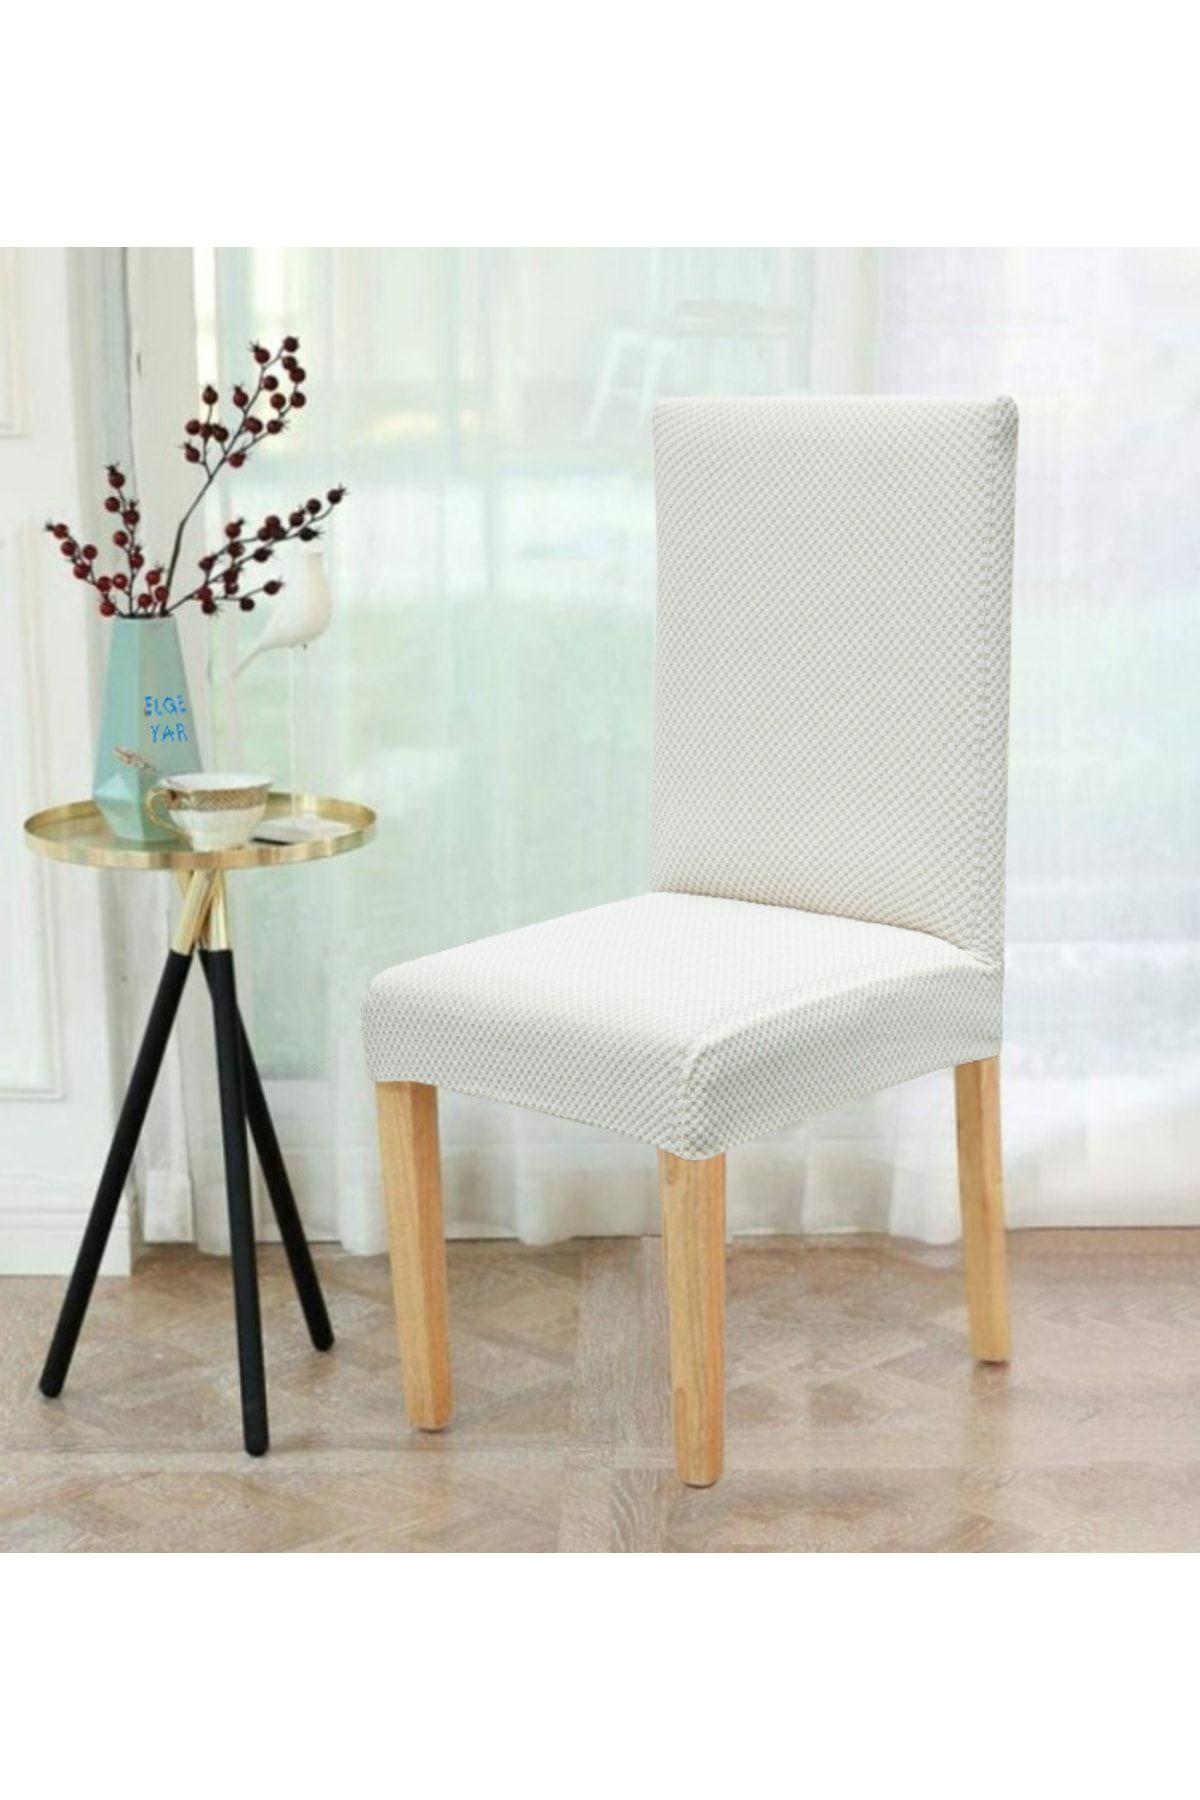 elgeyar Balpeteği Likra Kumaşlı Sandalye Örtüsü Lastikli Sandalye Kılıfı 1 Adet Beyaz Rengi